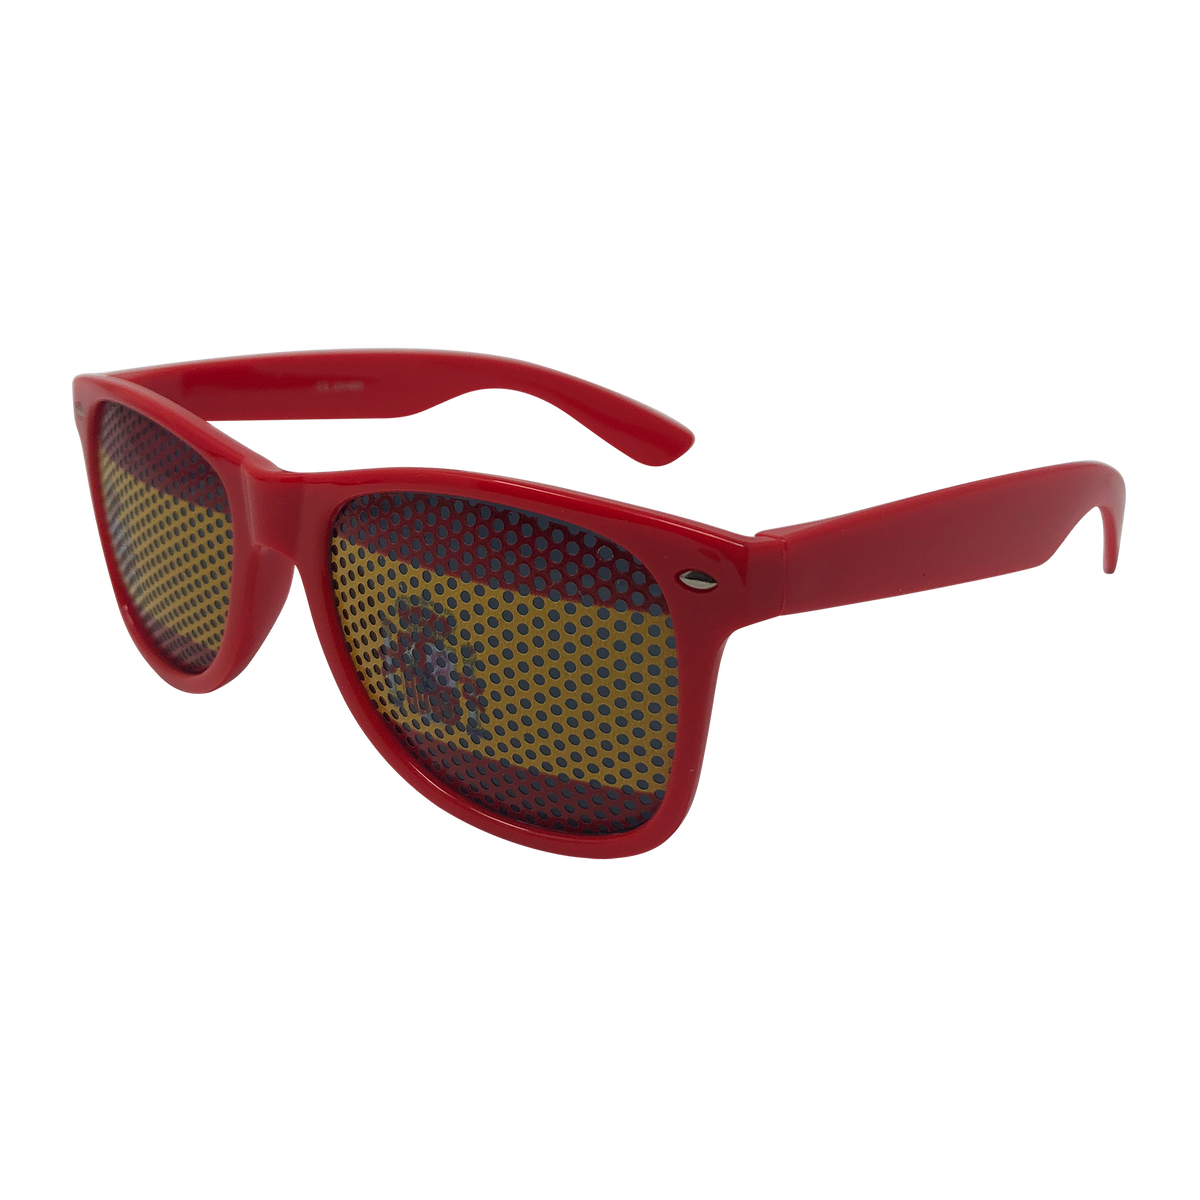 Novelty Sunglasses - Spain Flag Lens Print